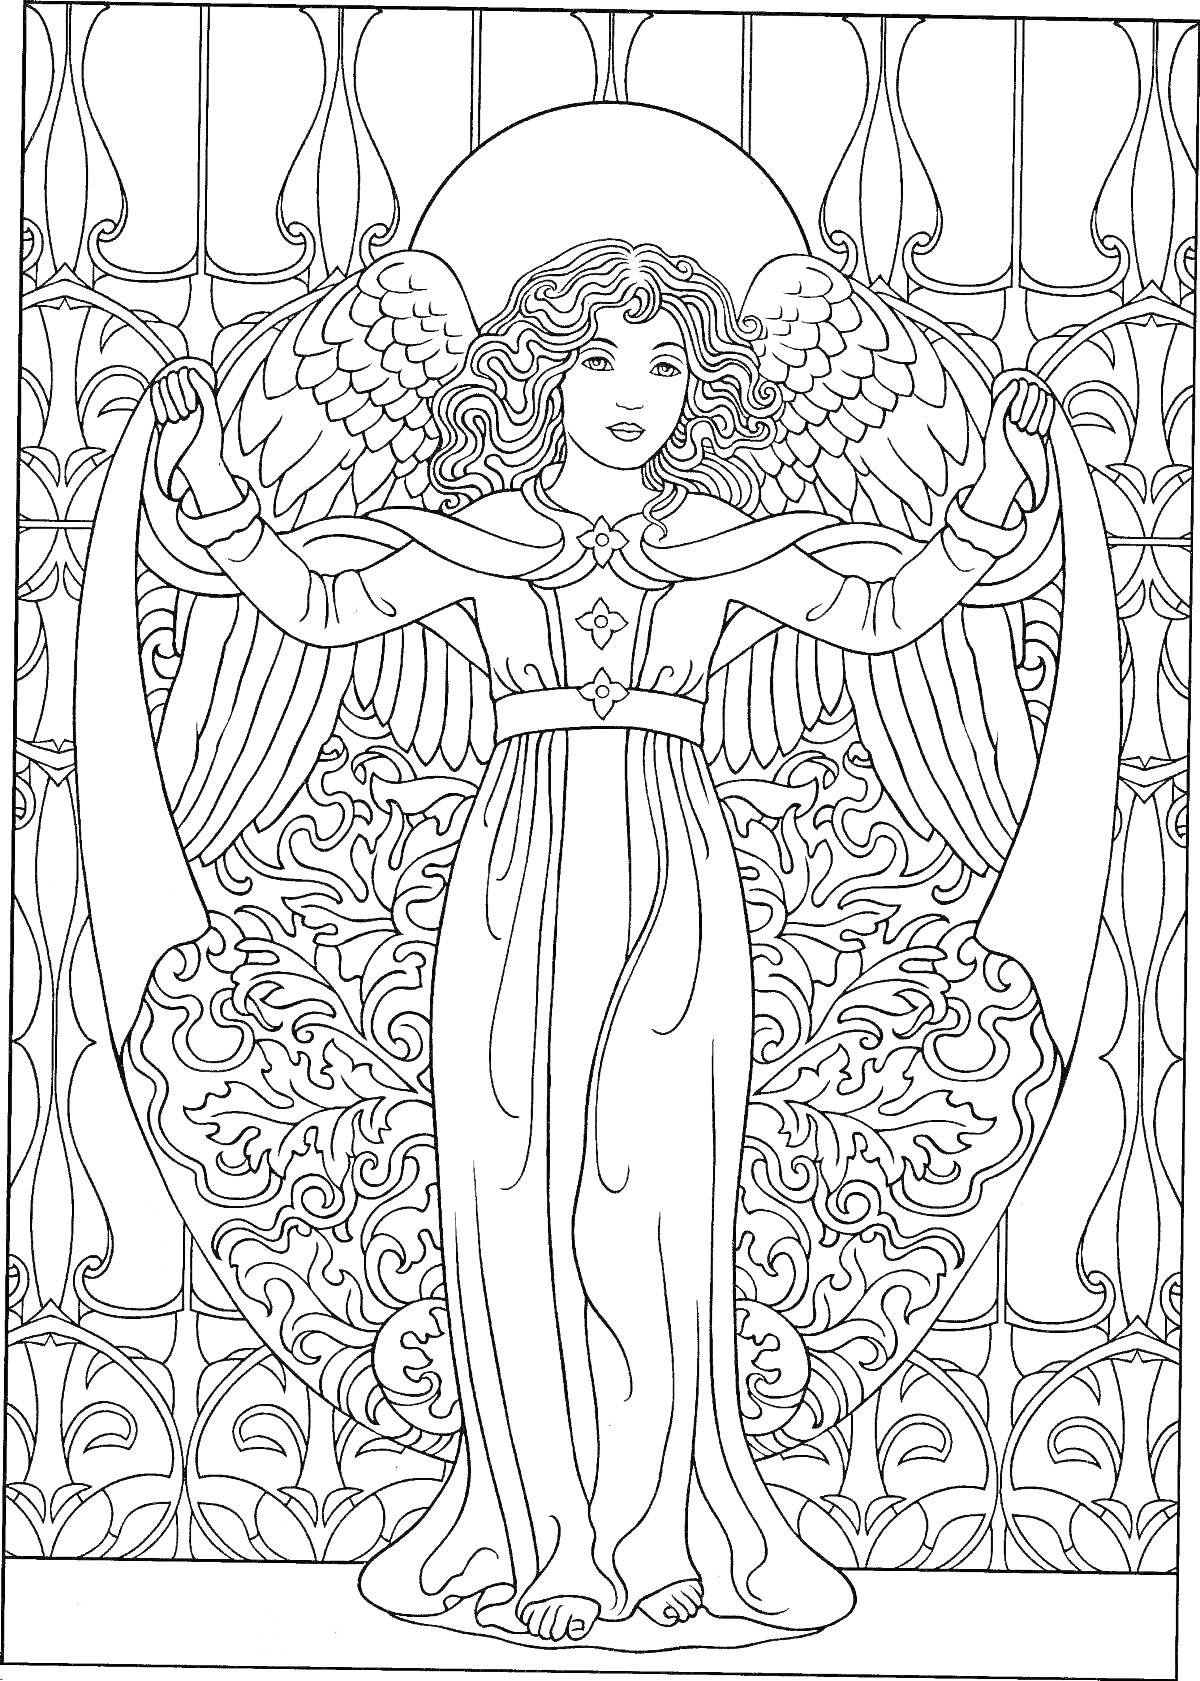 Раскраска Ангел с полотном на фоне цветочного узора и витражного окна